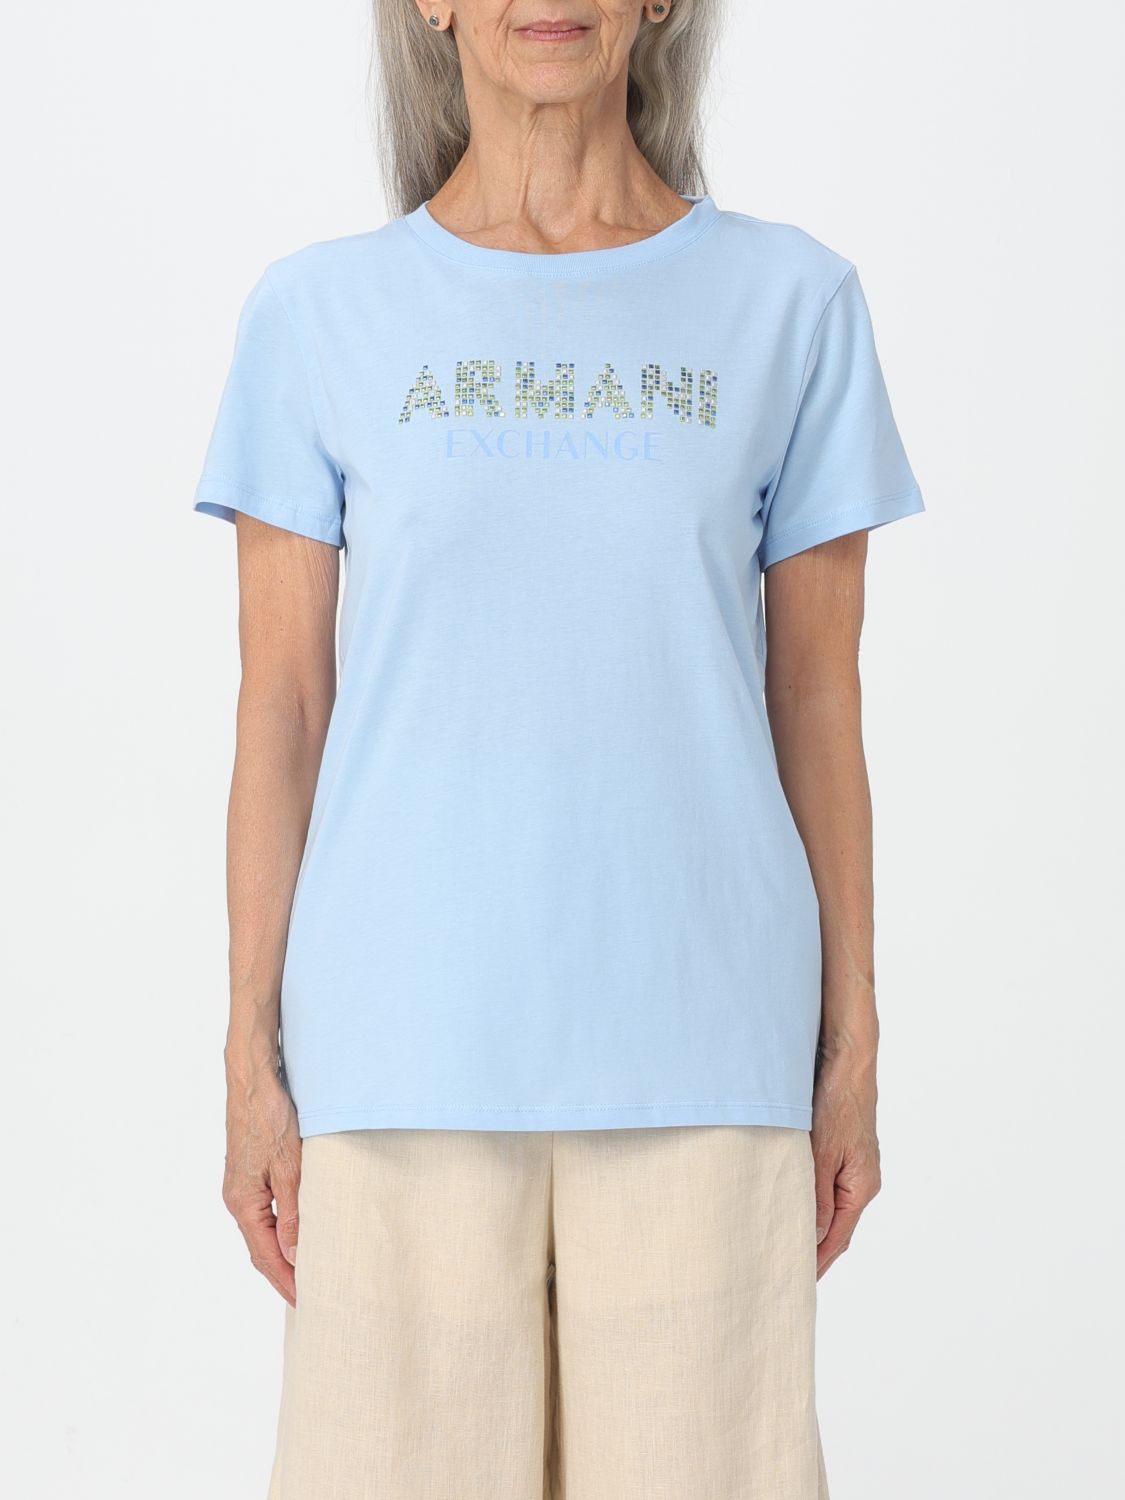 Armani Exchange T-shirt  Woman Colour Sky Blue